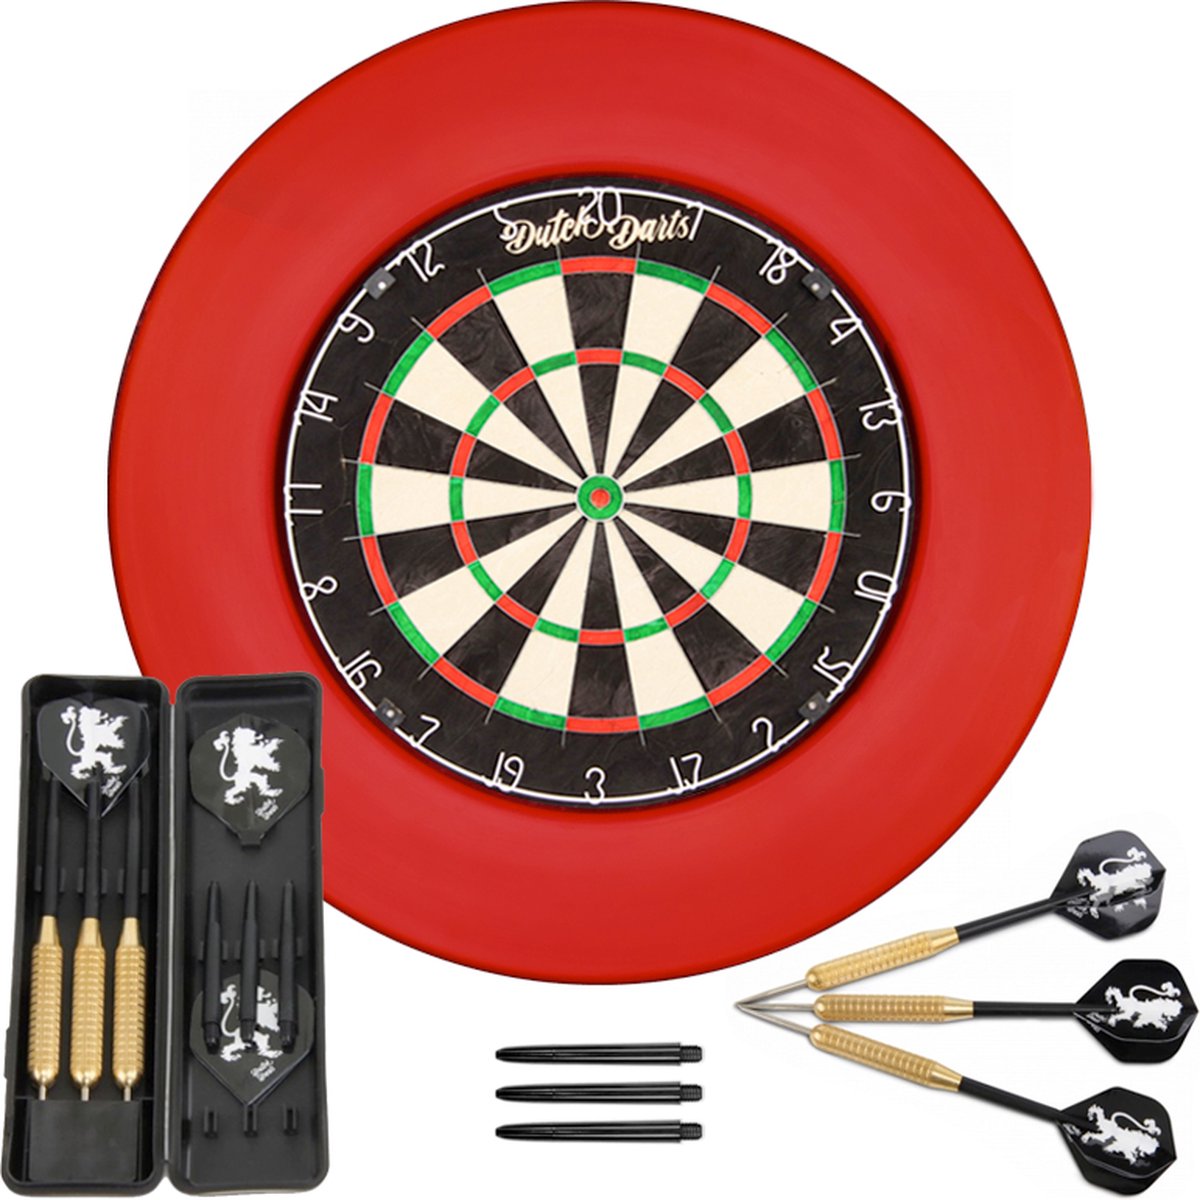 Dutch Darts Dartset met Bladewire dartbord, rode surround en een setje dartpijlen